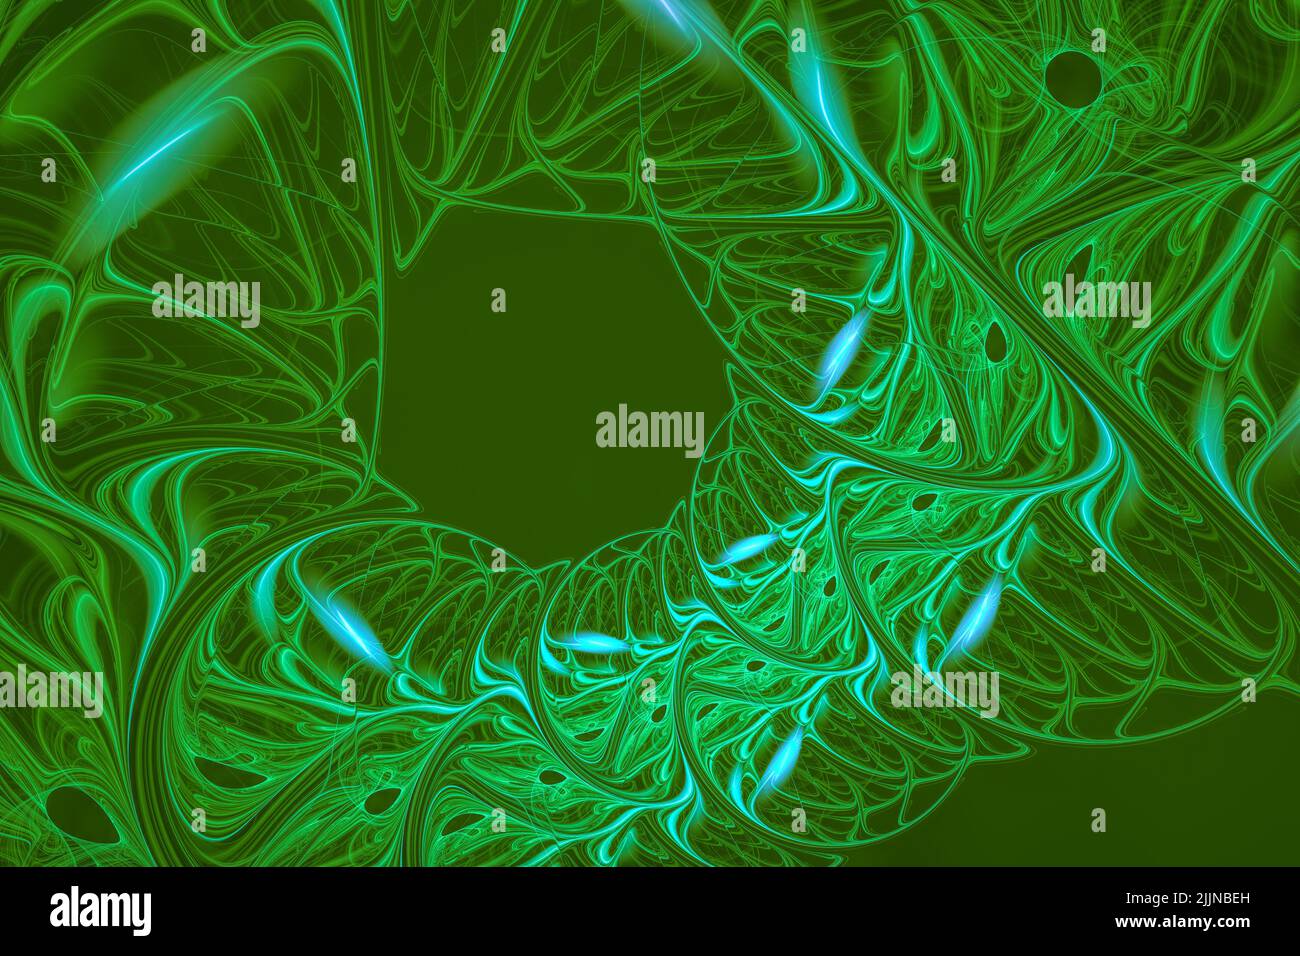 Eine Illustration des grünen abstrakten Fraktalhintergrunds Stockfoto